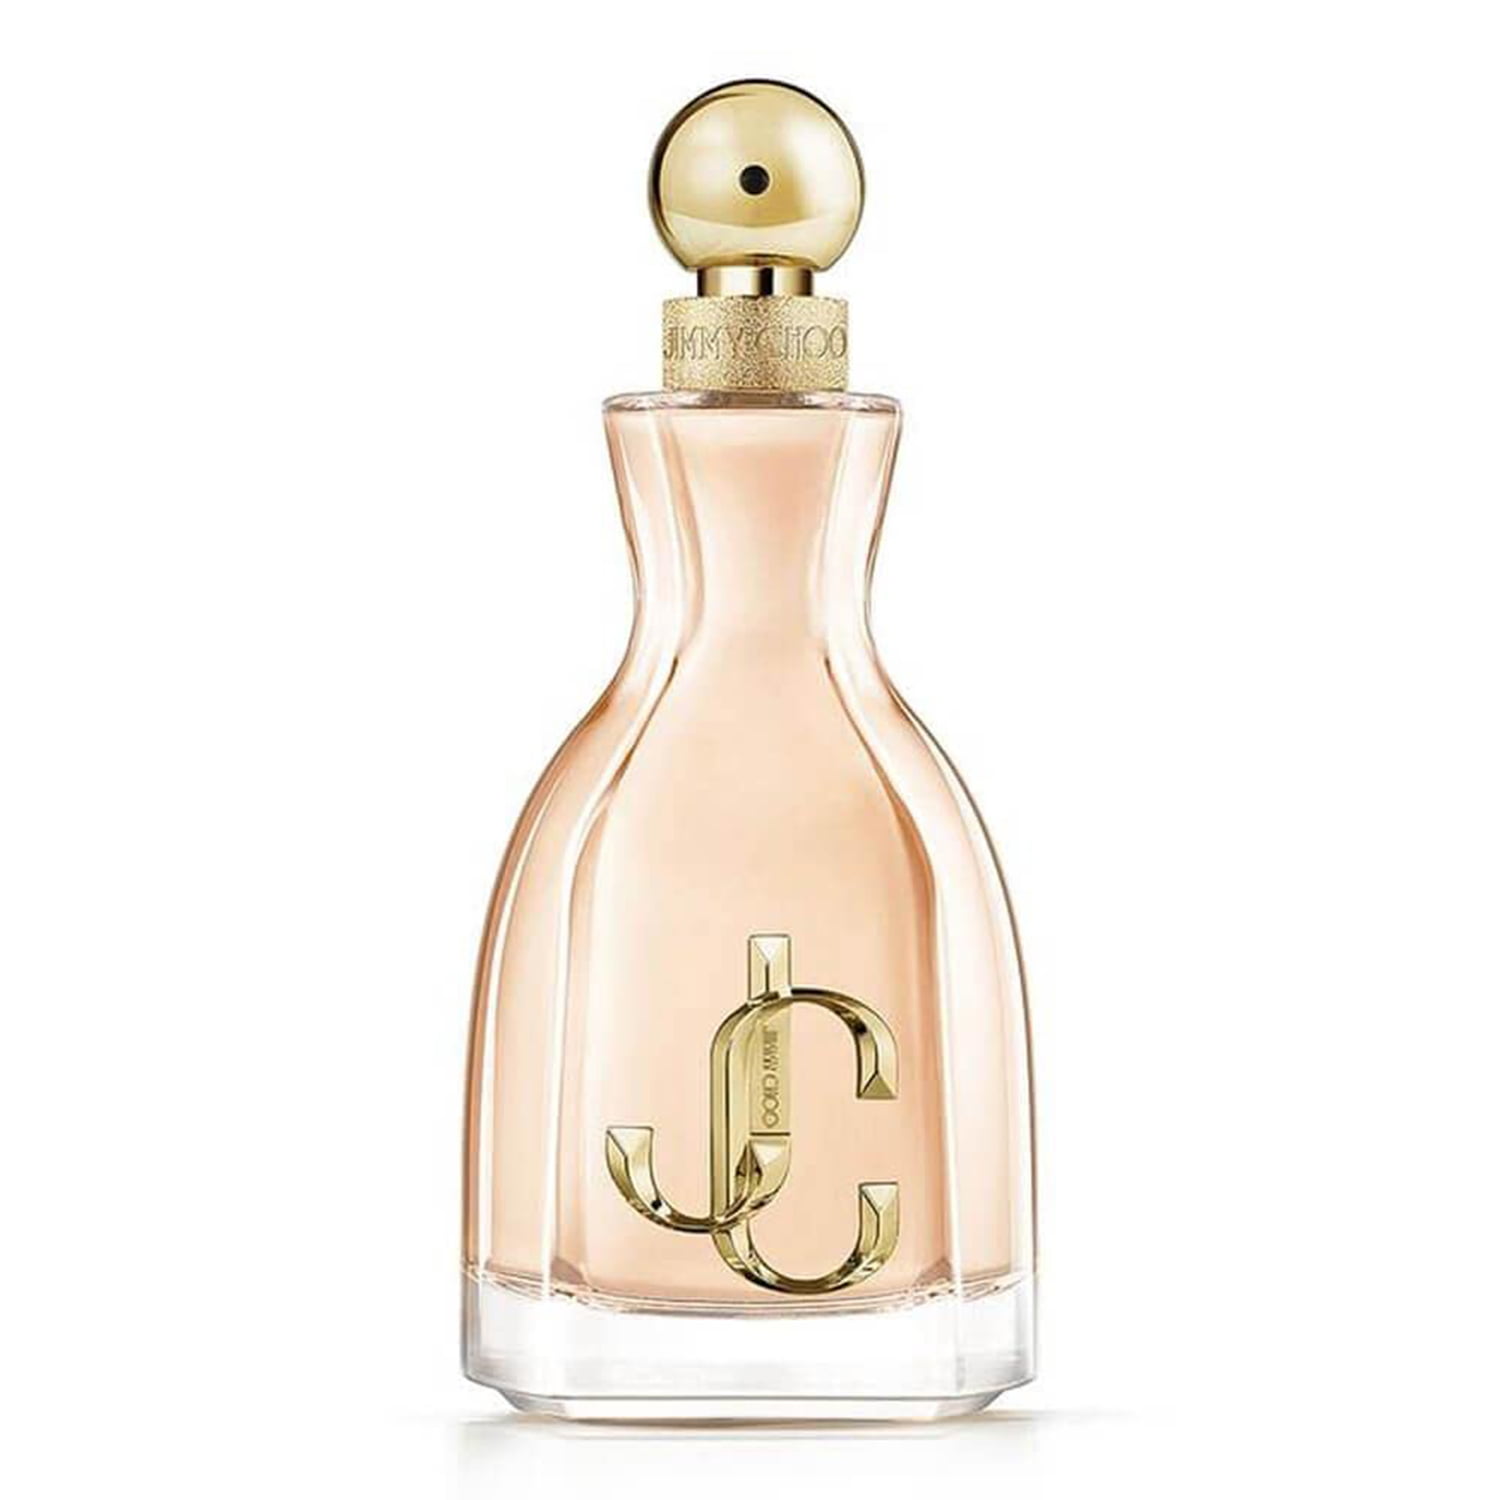 Jimmy Choo Ladies I Want Choo Eau de parfum Body Spray Fragrances, 100 ml / 3.3 fl. oz